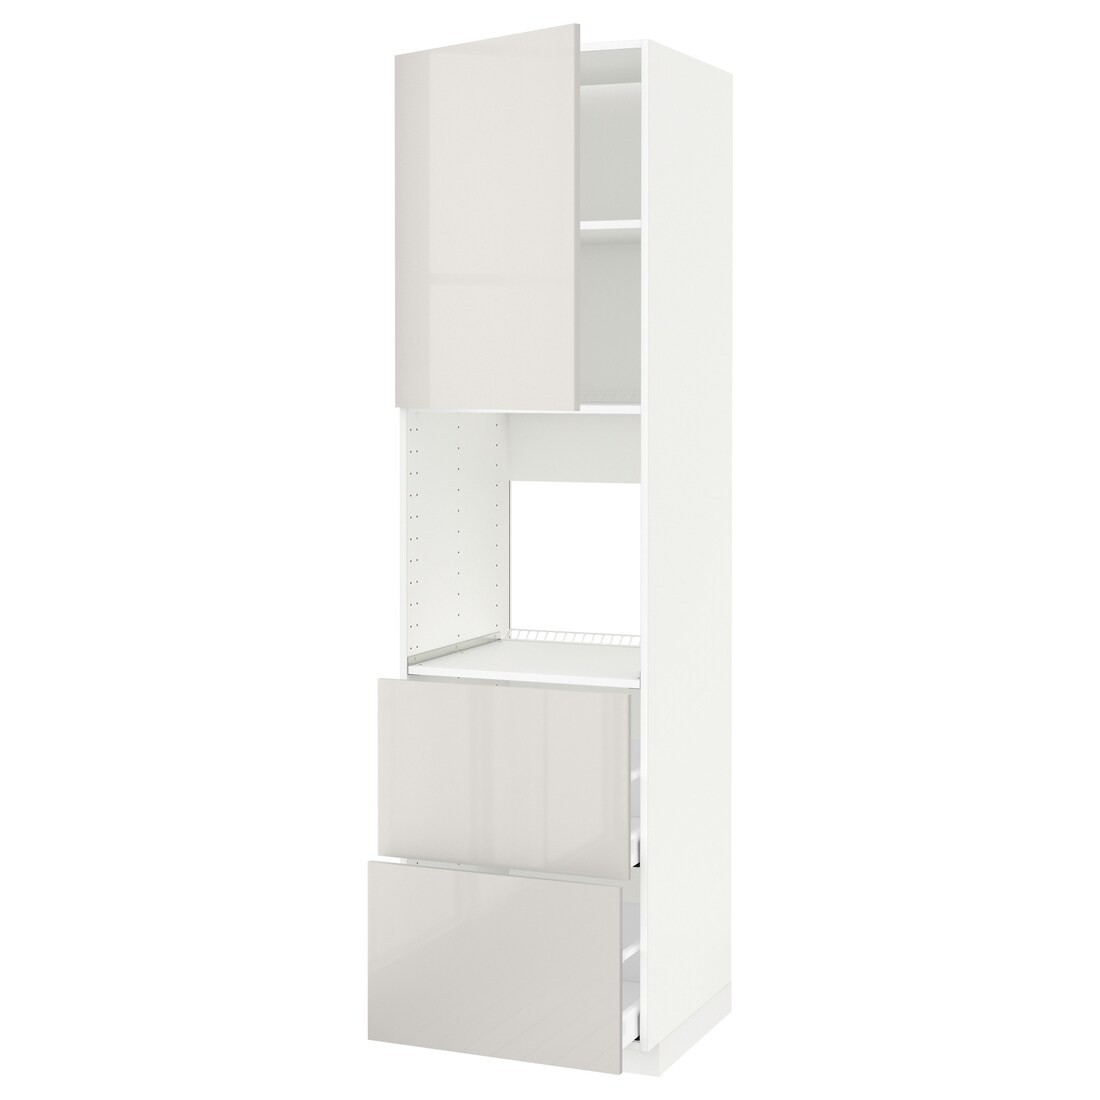 METOD МЕТОД / MAXIMERA МАКСИМЕРА Высокий шкаф для духовки с дверцей / ящиками, белый / Ringhult светло-серый, 60x60x220 см